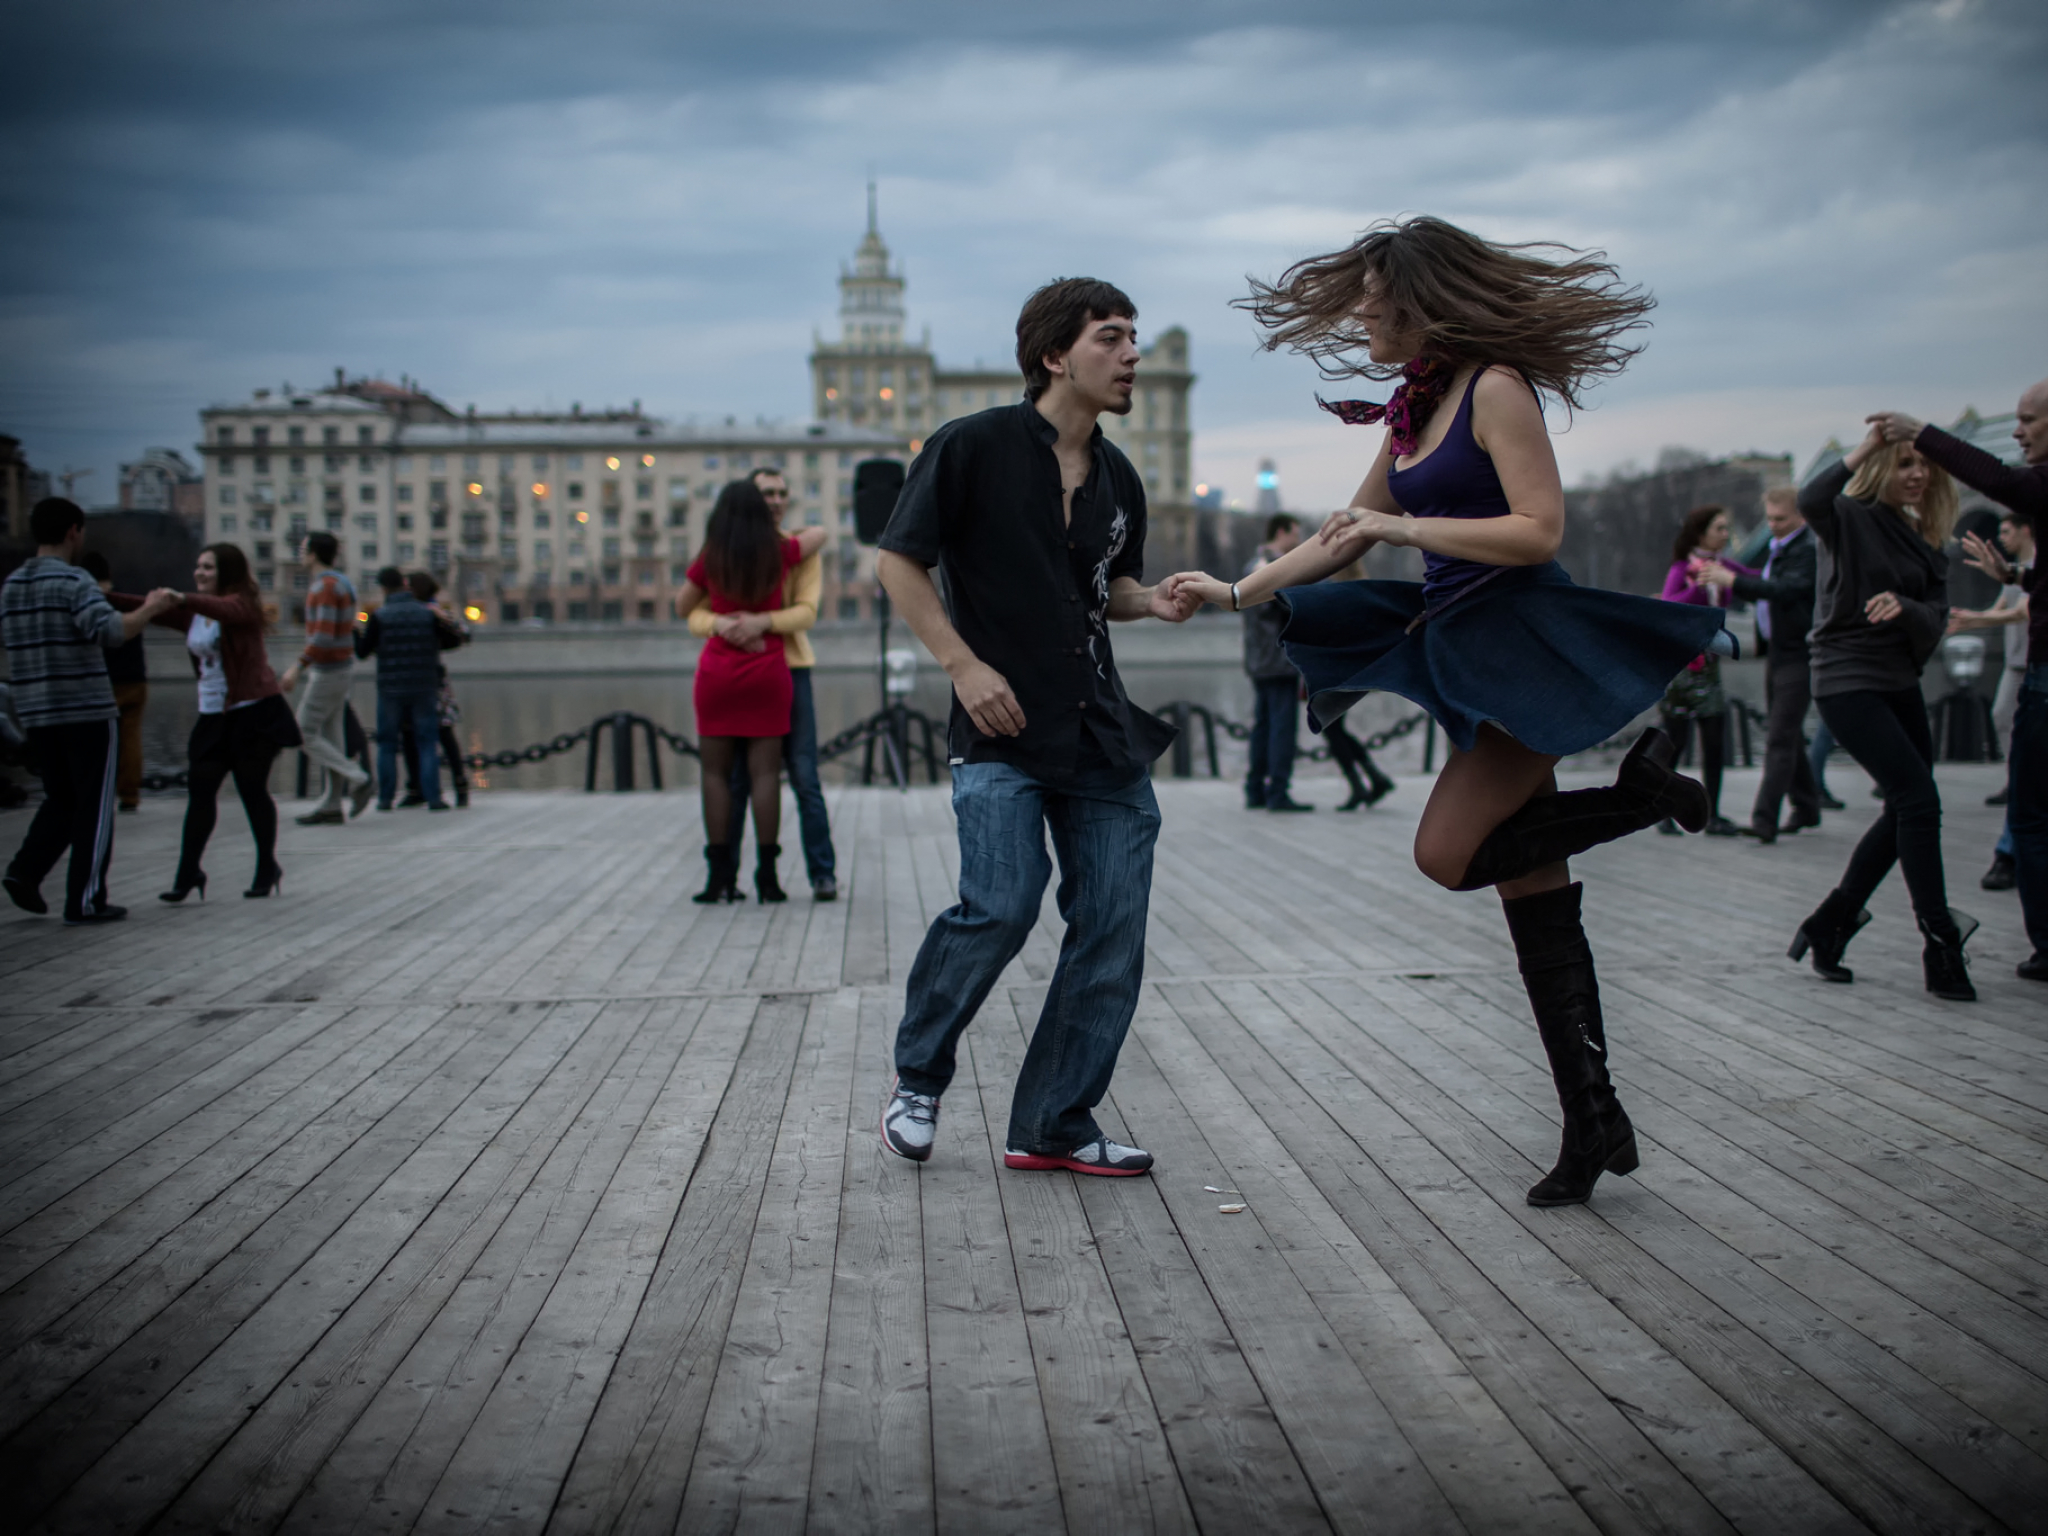 Лова танцы. Люди танцуют. Танцы на улице. Парень и девушка танцуют. Танцующие люди на улице.